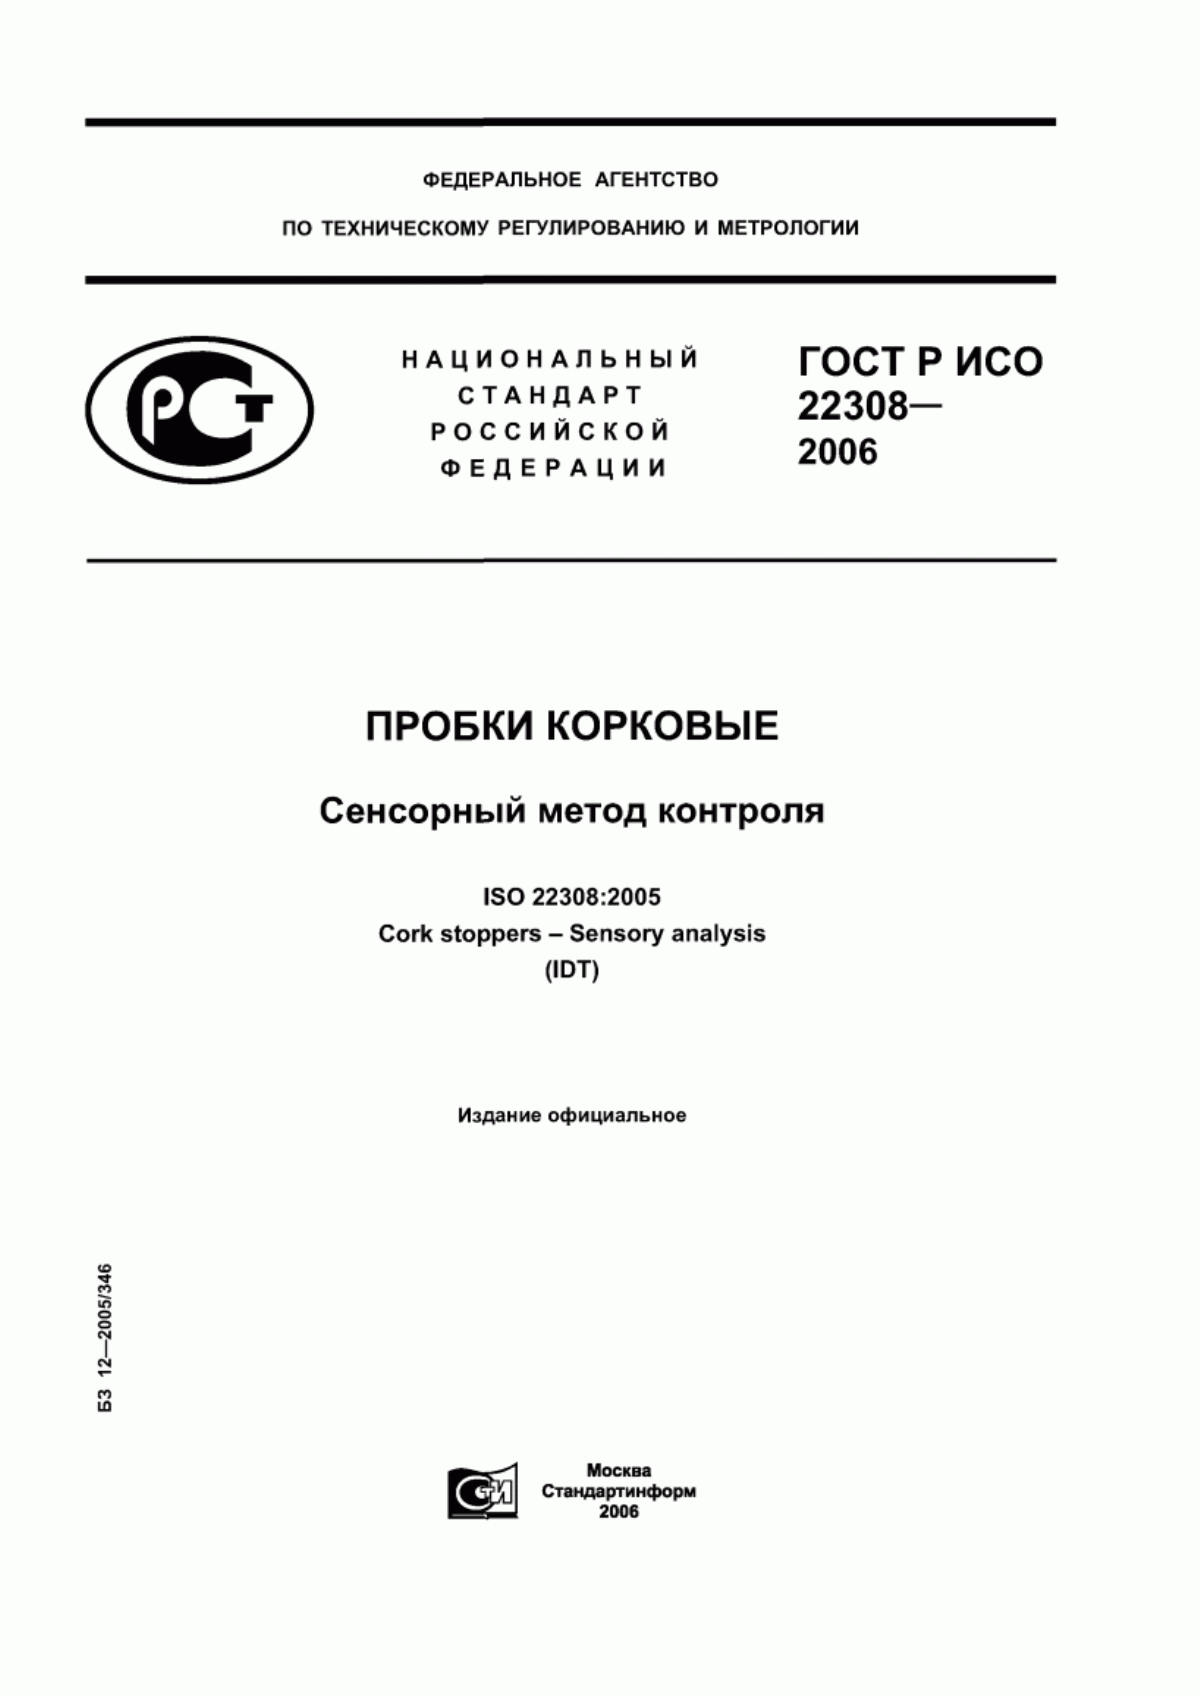 ГОСТ Р ИСО 22308-2006 Пробки корковые. Сенсорный метод контроля